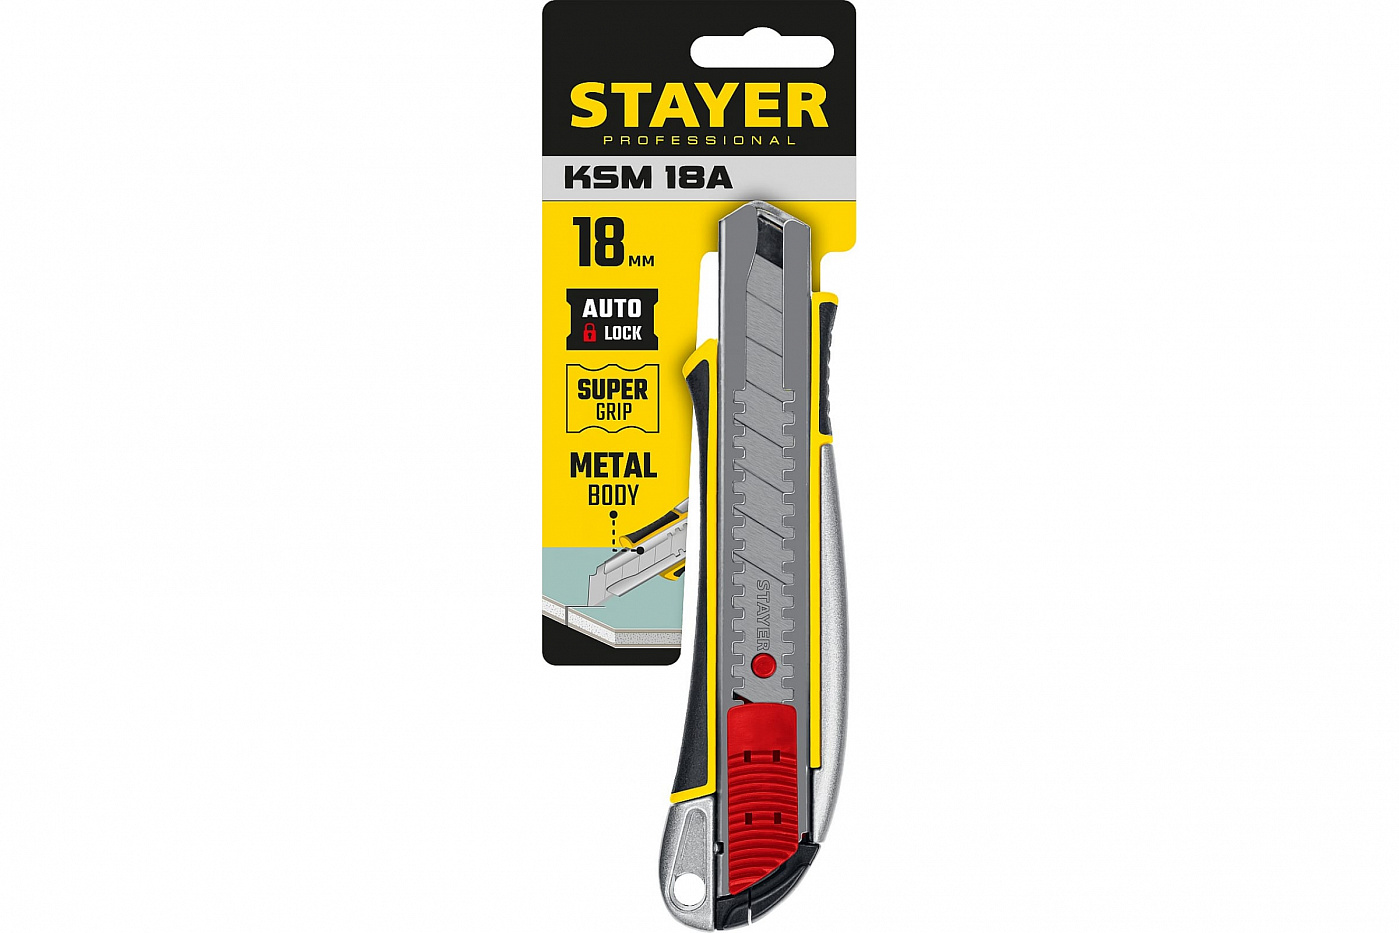 Нож металлический с автостопом Stayer KSM-18A, сегмент. лезвия 18 мм путеводитель для путешествующих автостопом по галактике